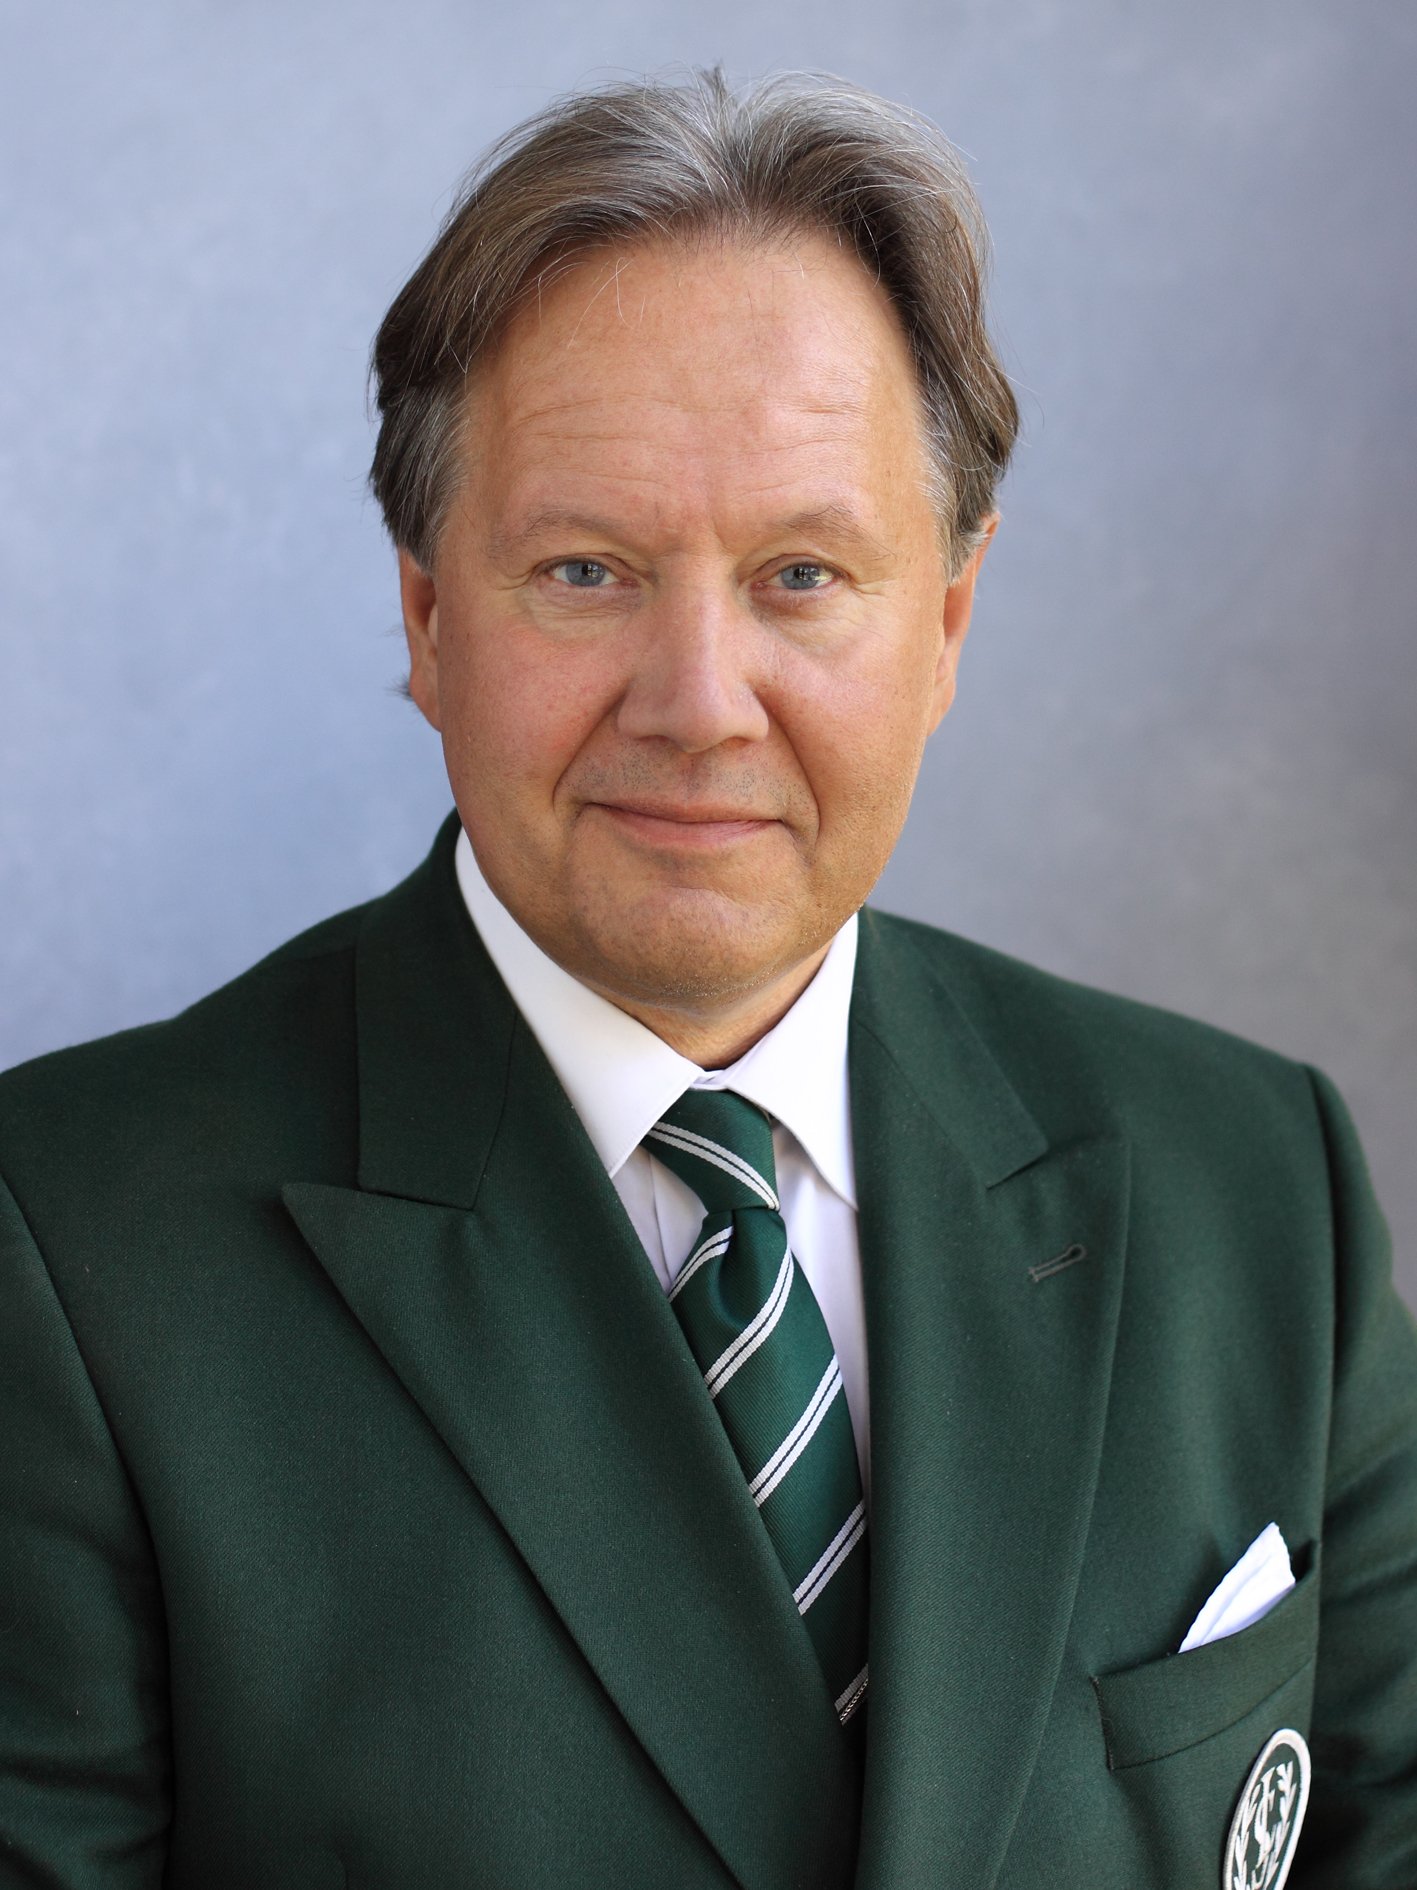 Rektorn tillika verksamhetschefen Staffan Hörnberg sparkades på onsdagskvällen.